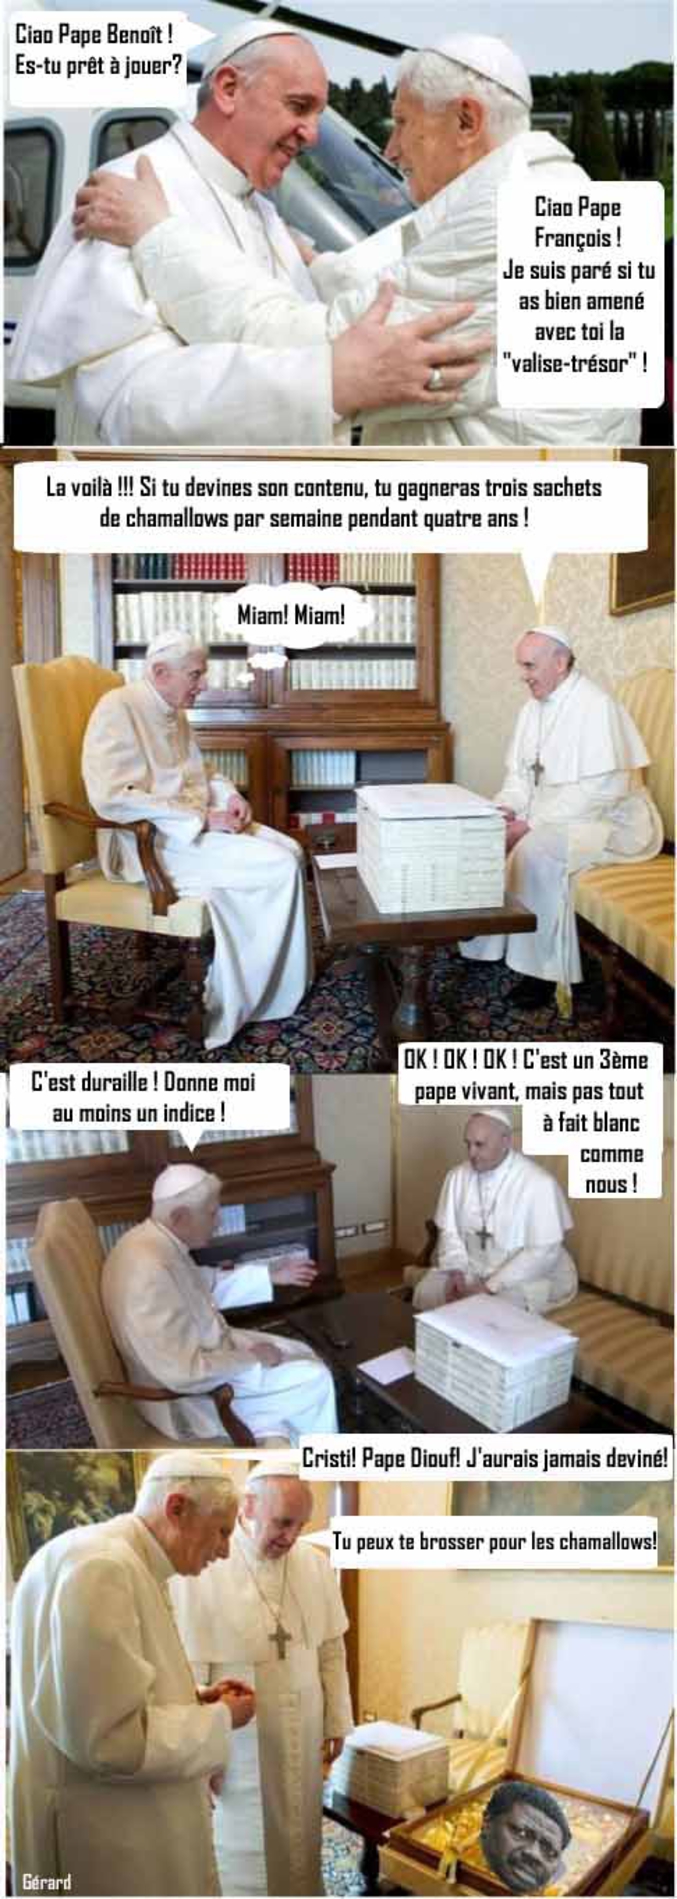 ...qu'est-ce qu'ils se racontent? Des histoires de pape!